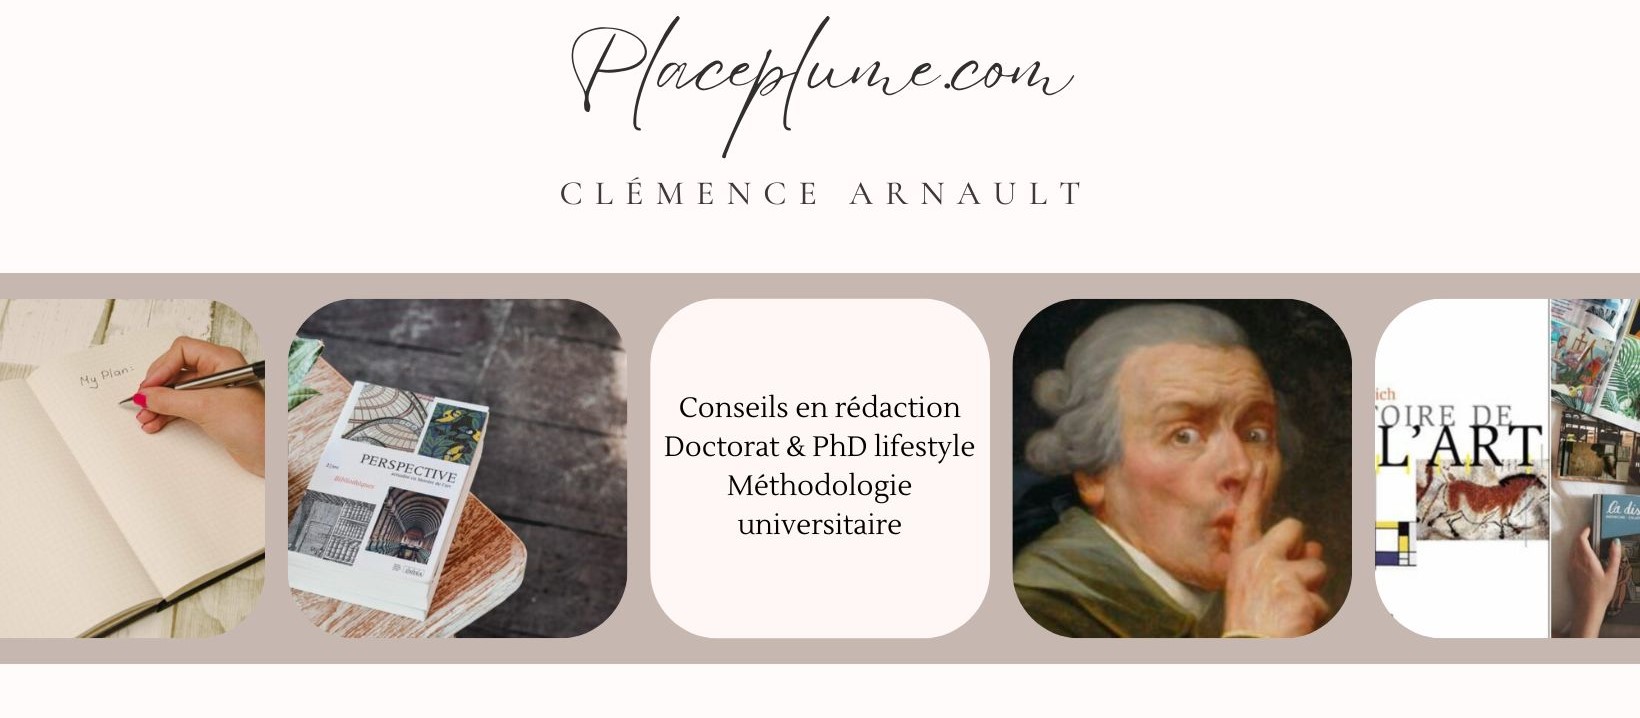 Clémence Arnault - placeplume.com - conseils en rédaction - doctorat et PhD lifestyle - méthodologie universitaire